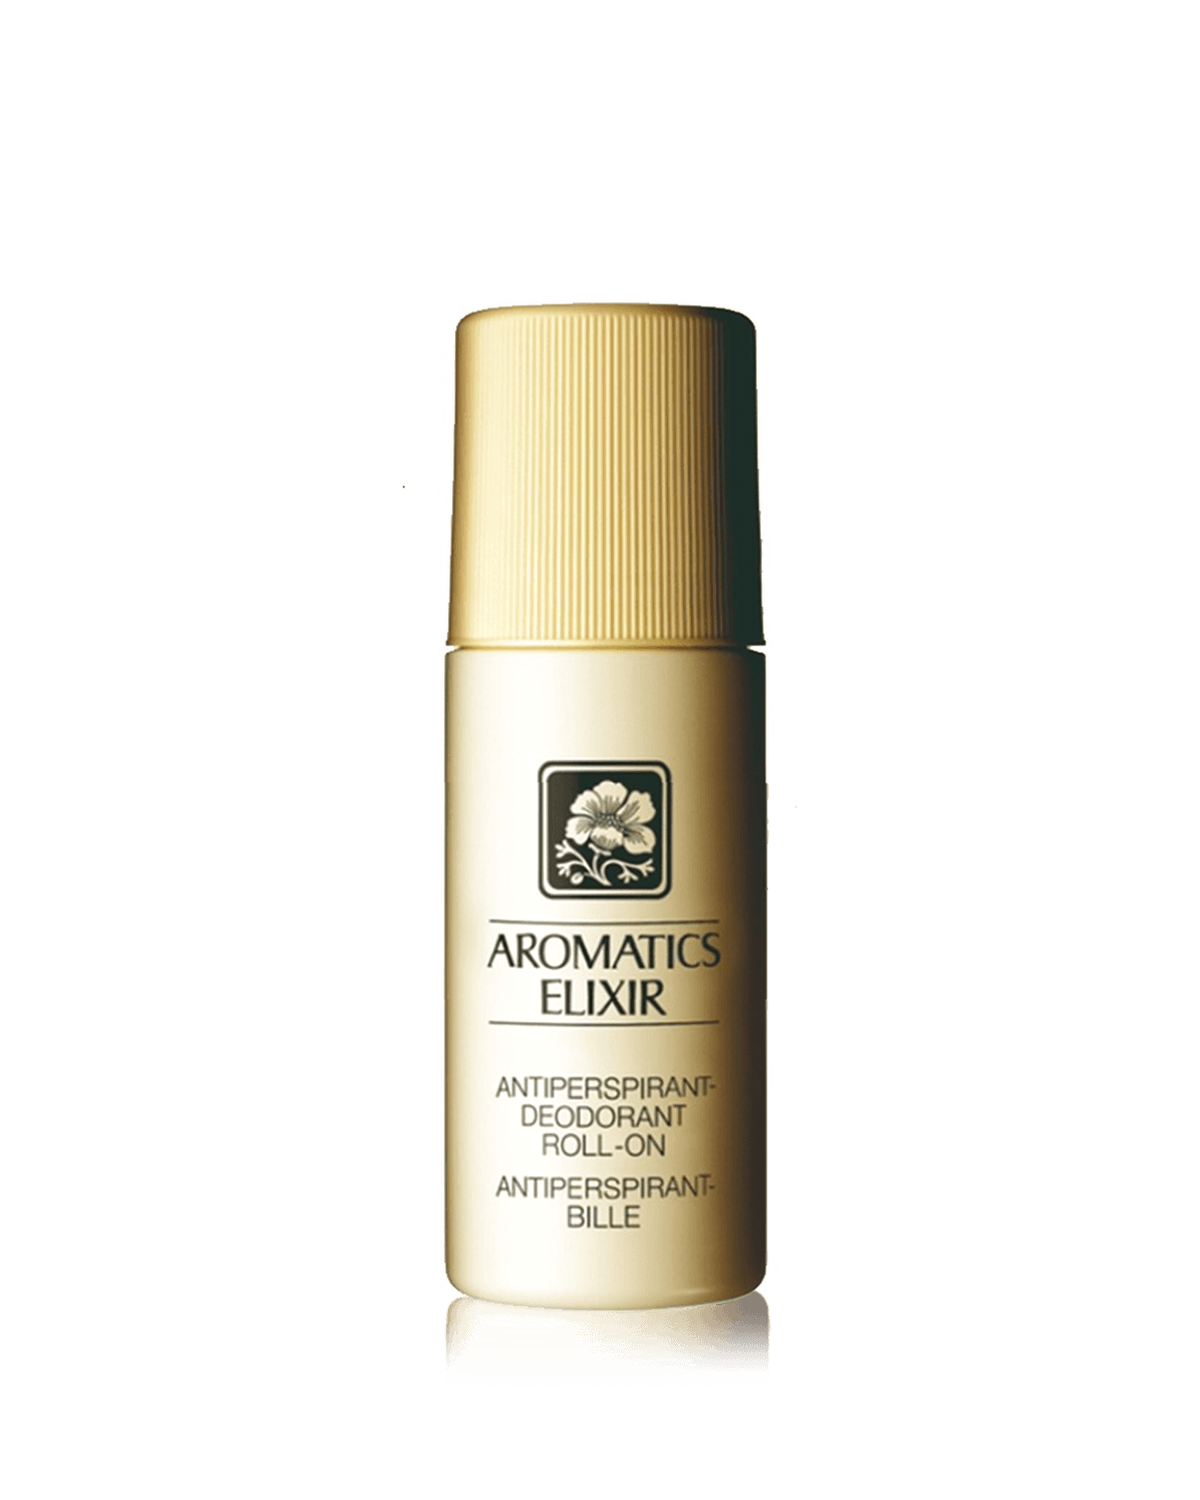 Aromatics Elixir Anti-Perspirant Deodorant